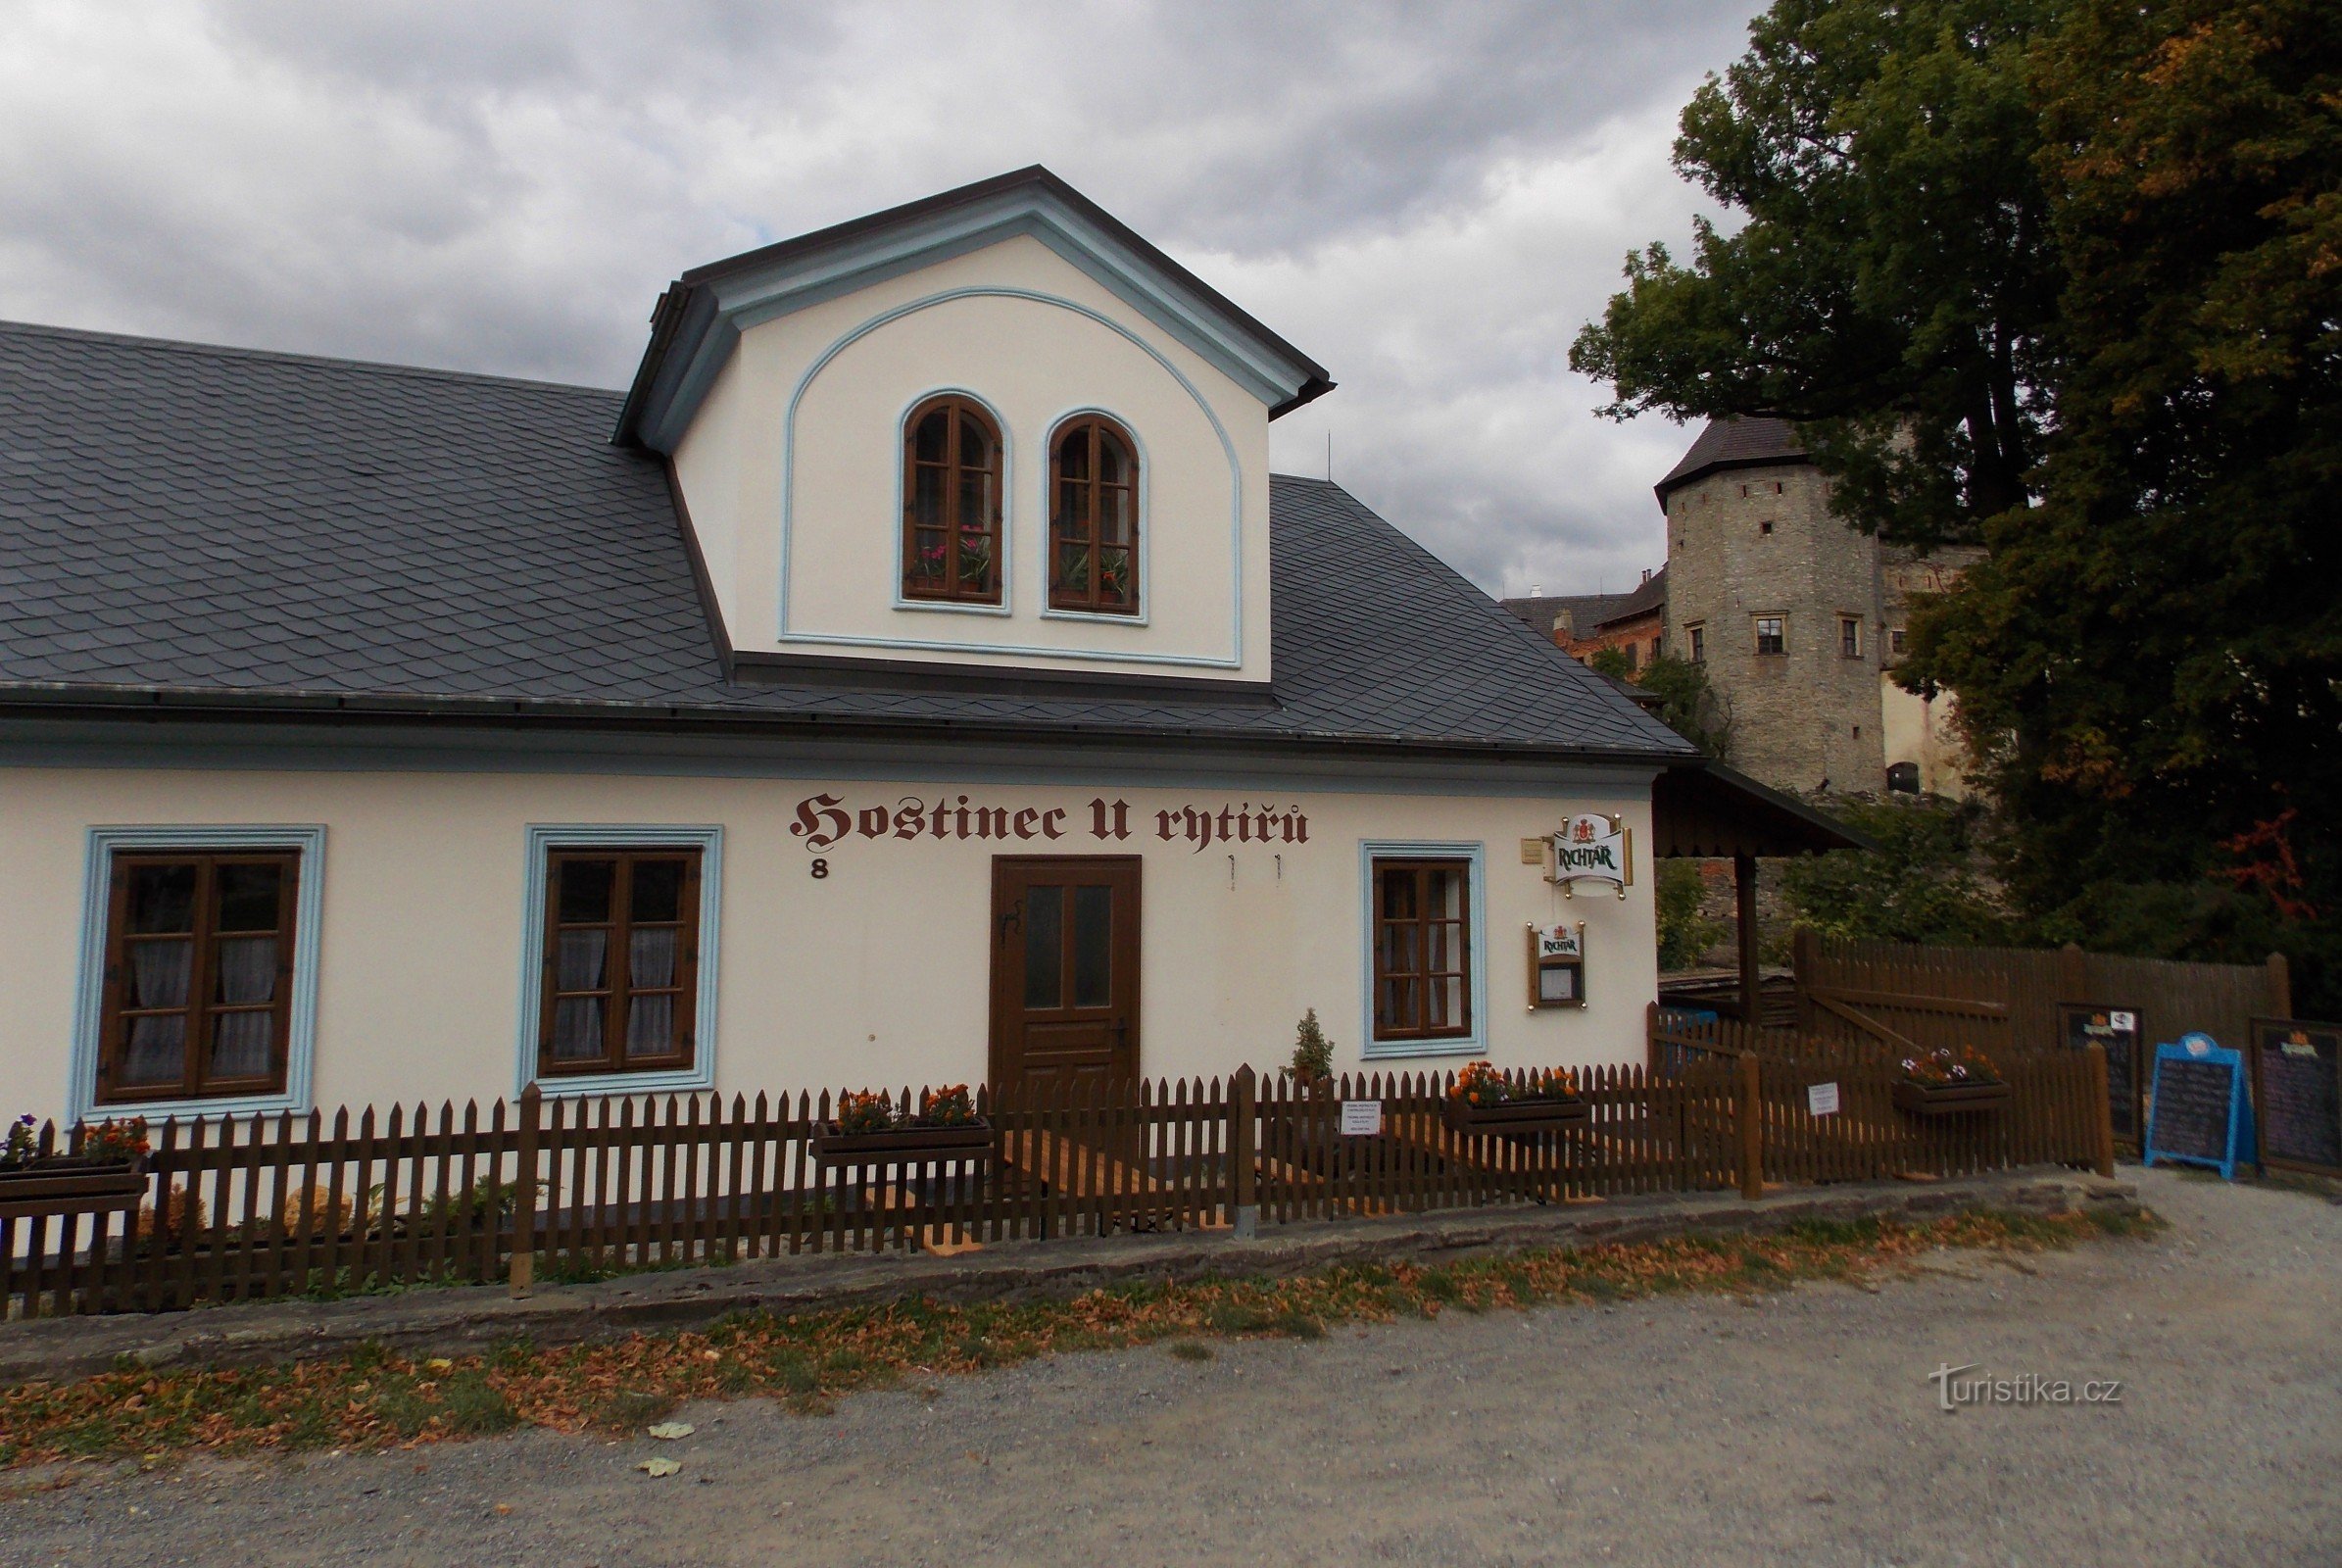 U Rytířů fogadó a Sovinec vár közelében